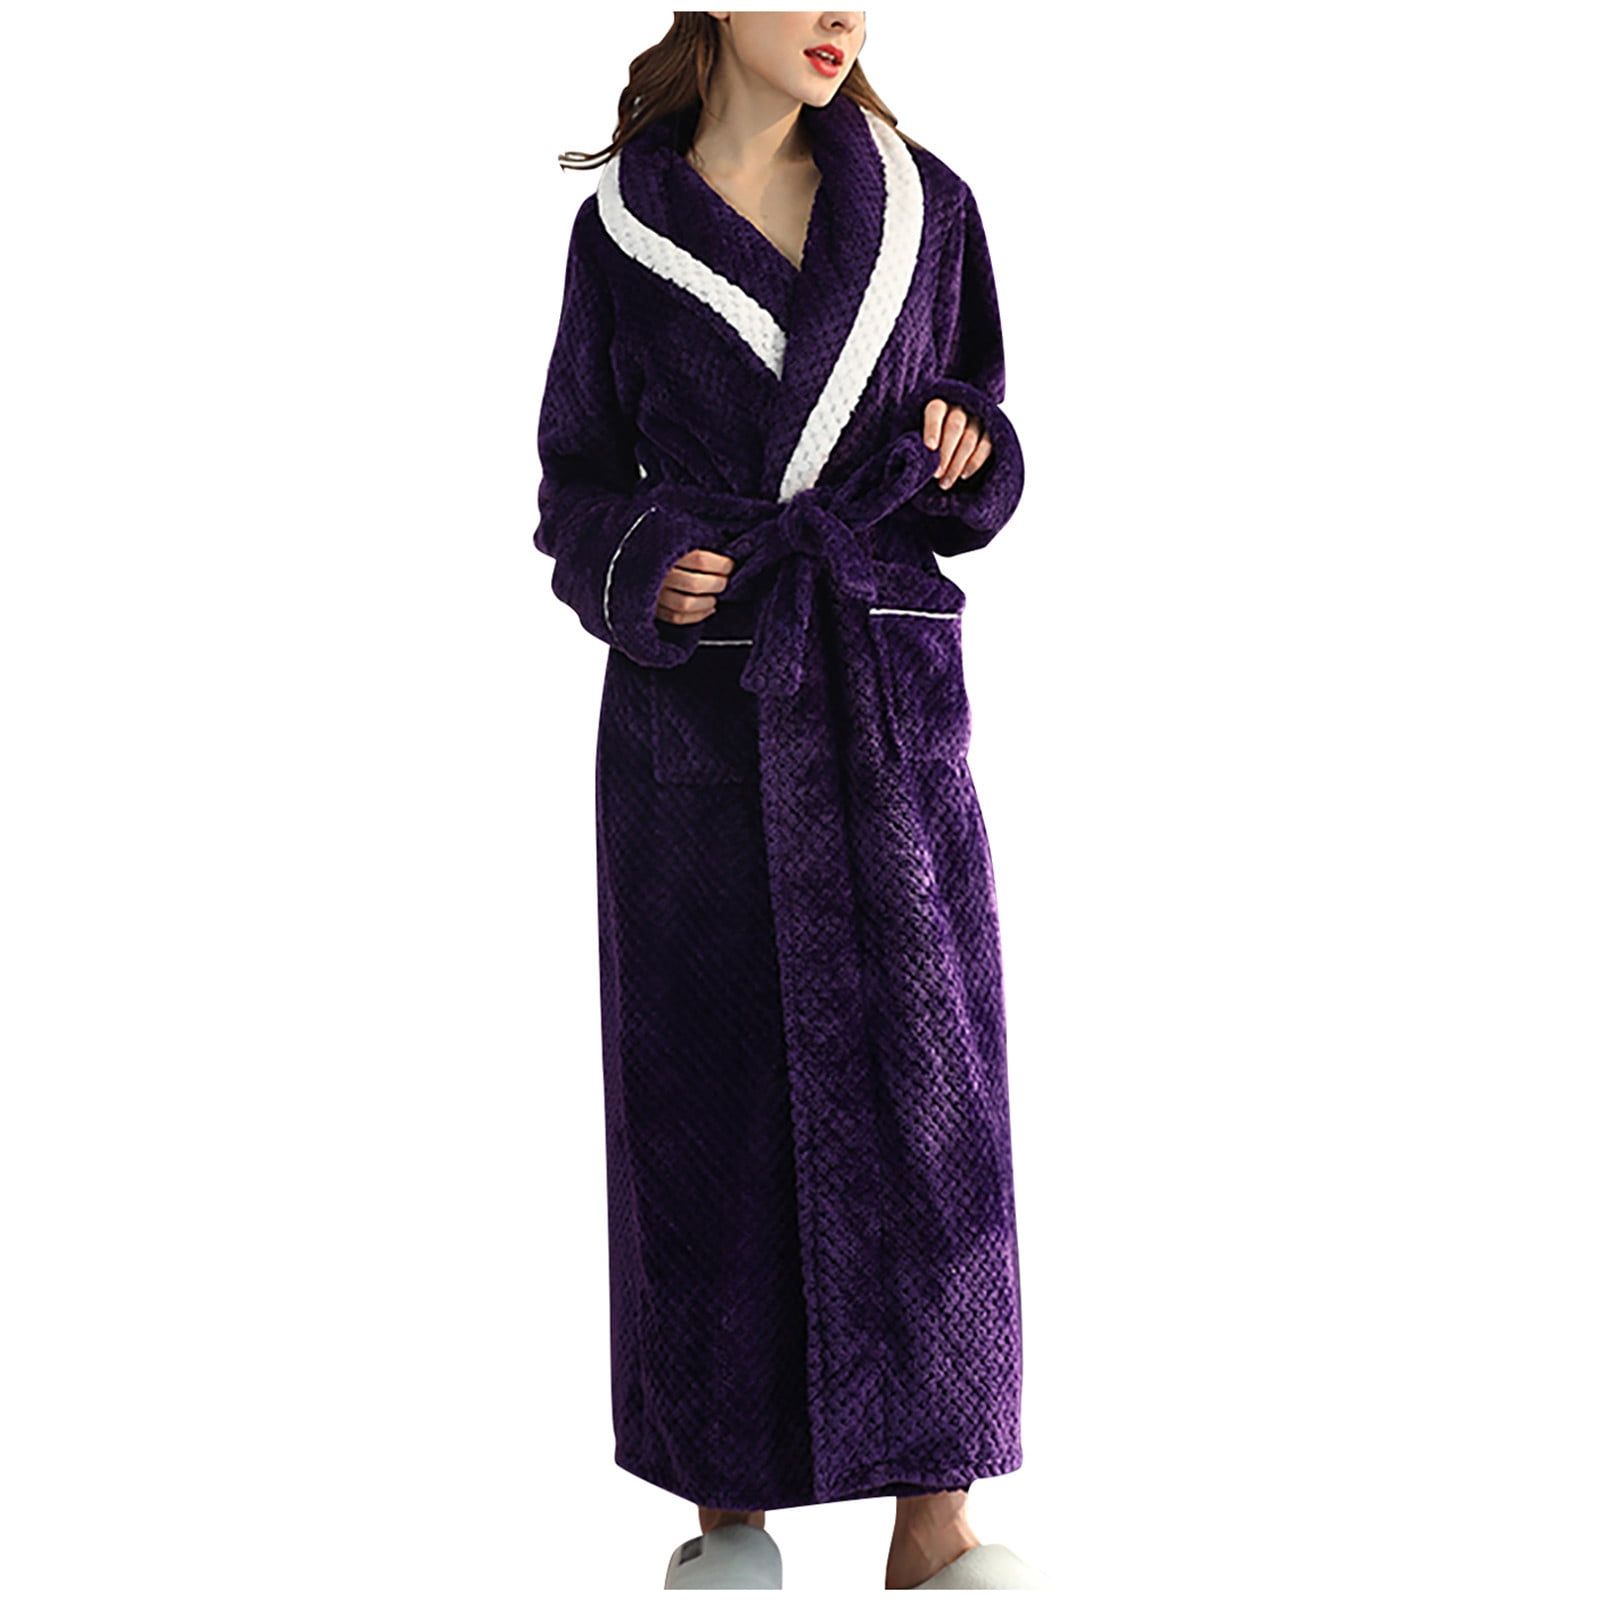 Long Robes for Women Winter Fleece Warm Couple Bathrobe Nightgown ...